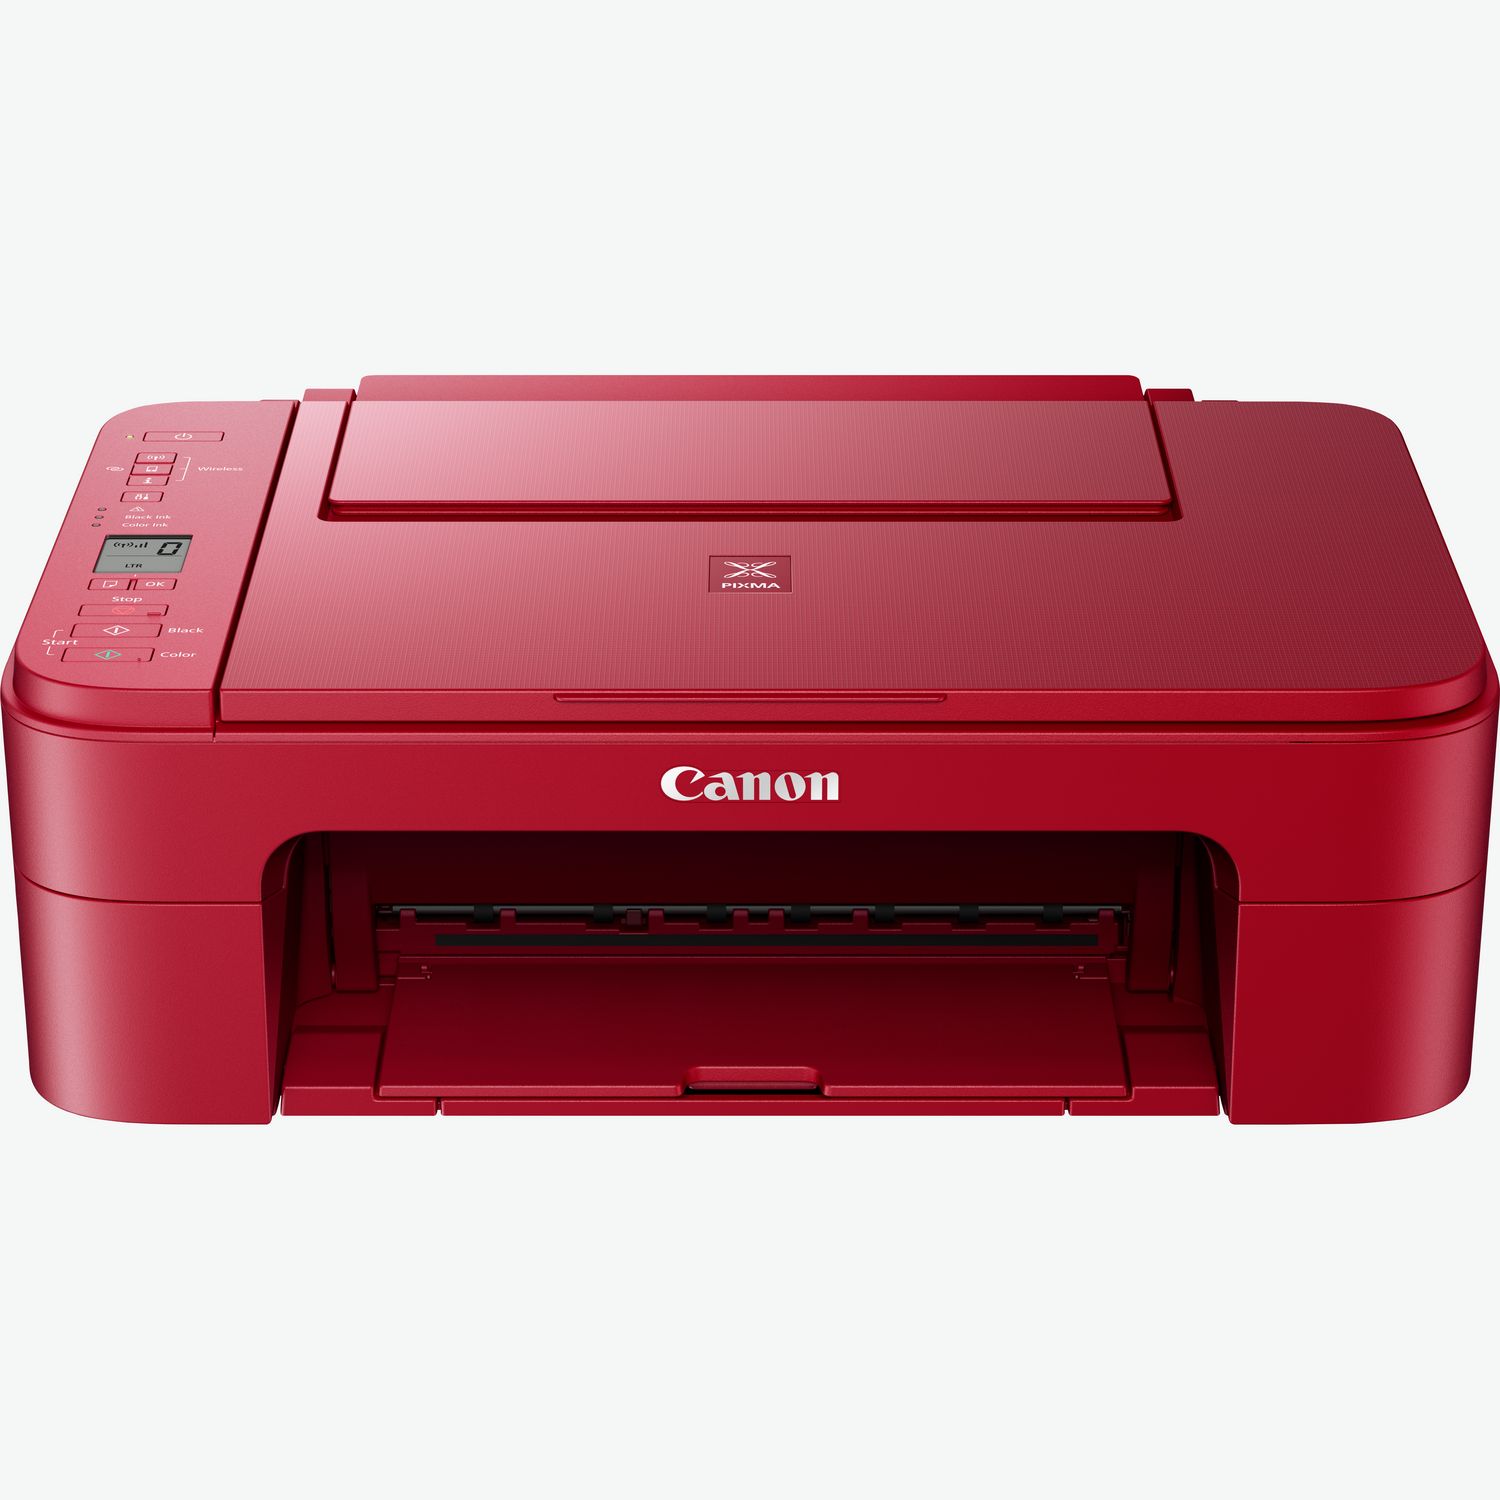 CANON - Stampante Multifunzione Pixma TS 3150 Inkjet a Colori Stampa Copia  Scansione A4 7.7 Ppm Wi-Fi USB - ePrice